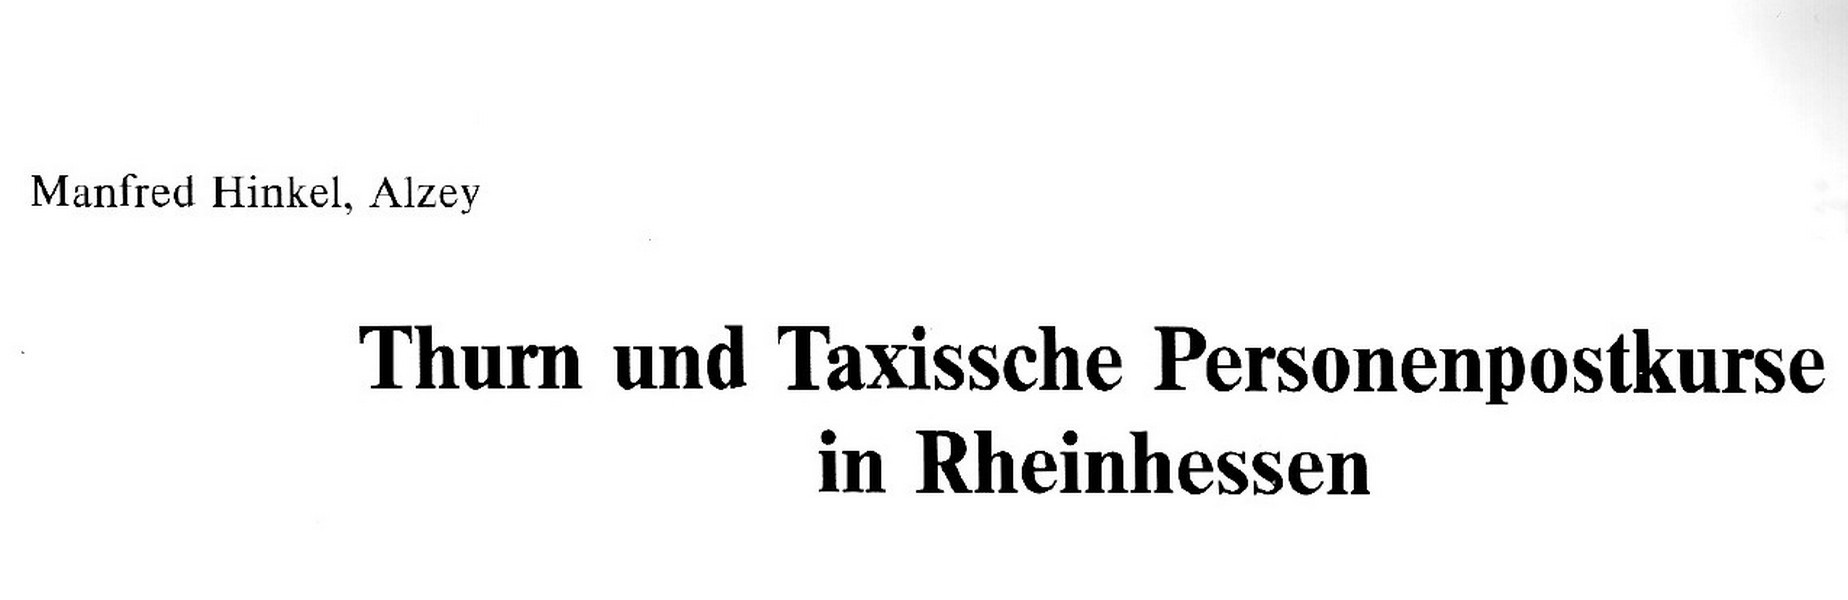 Thurn und Taxissche Personenpostkurse in Rheinhessen (Kulturverein Guntersblum CC BY-NC-SA)